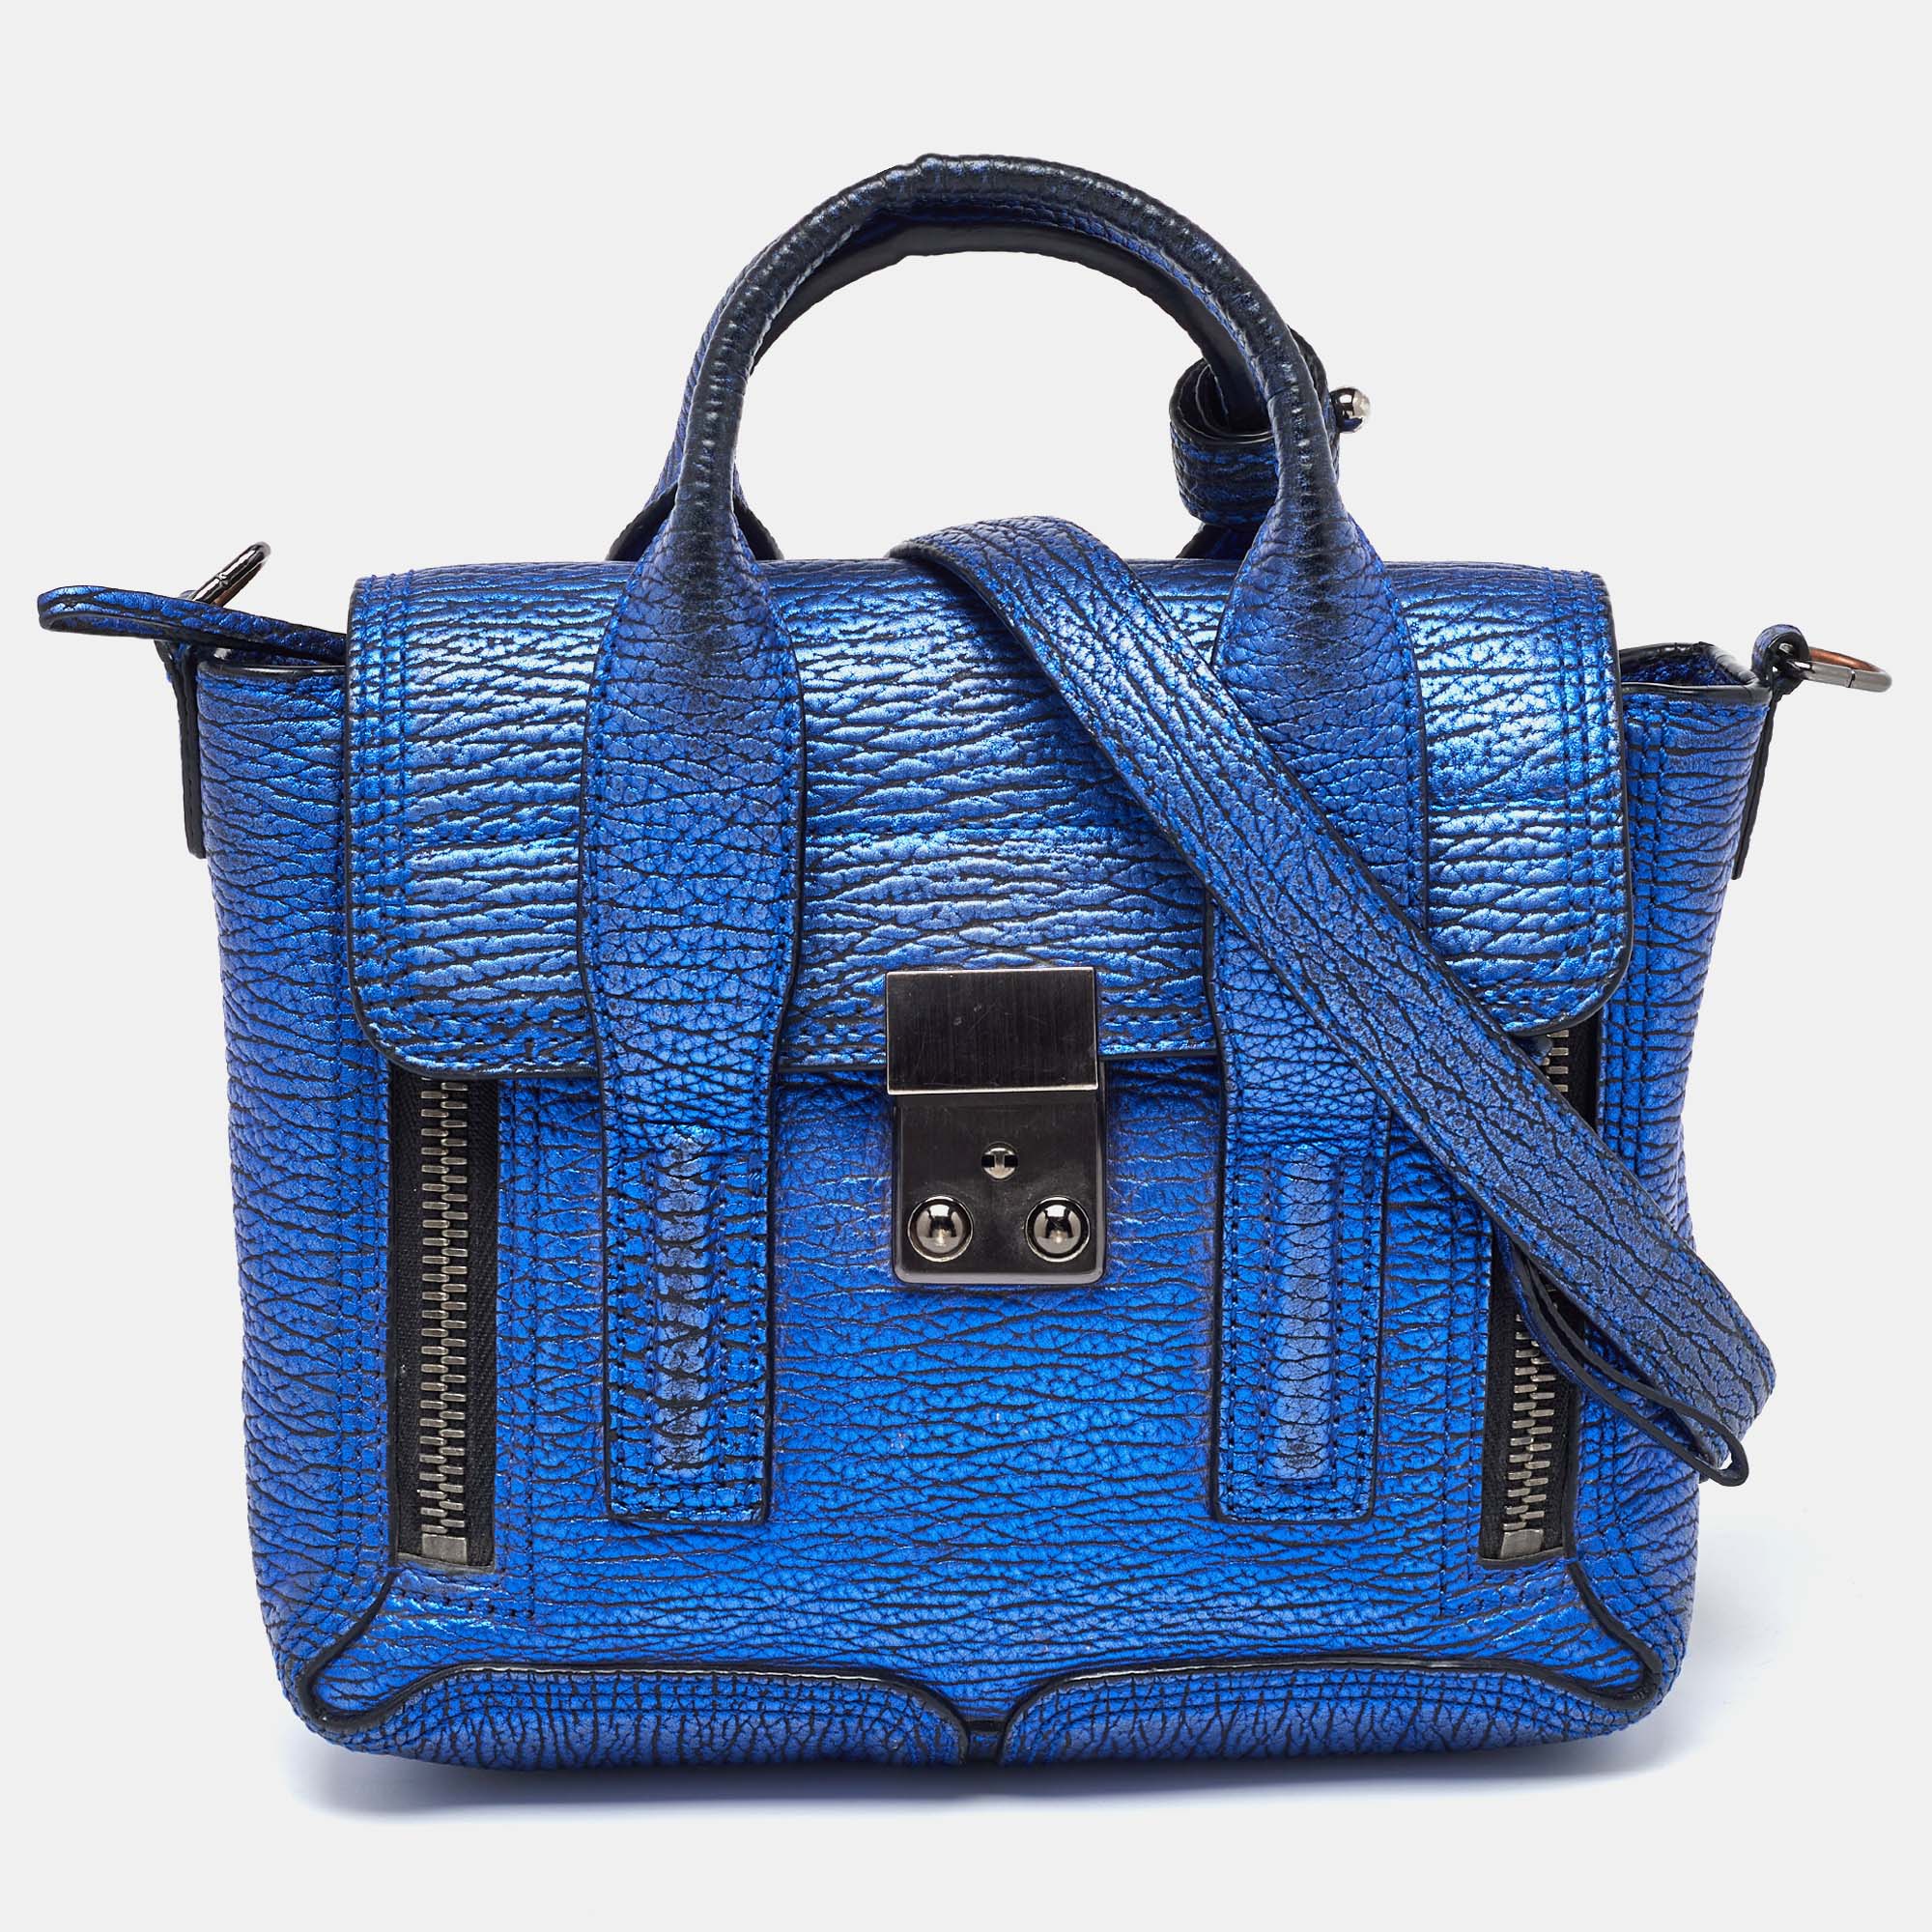 3.1 phillip lim blue leather mini pashli satchel